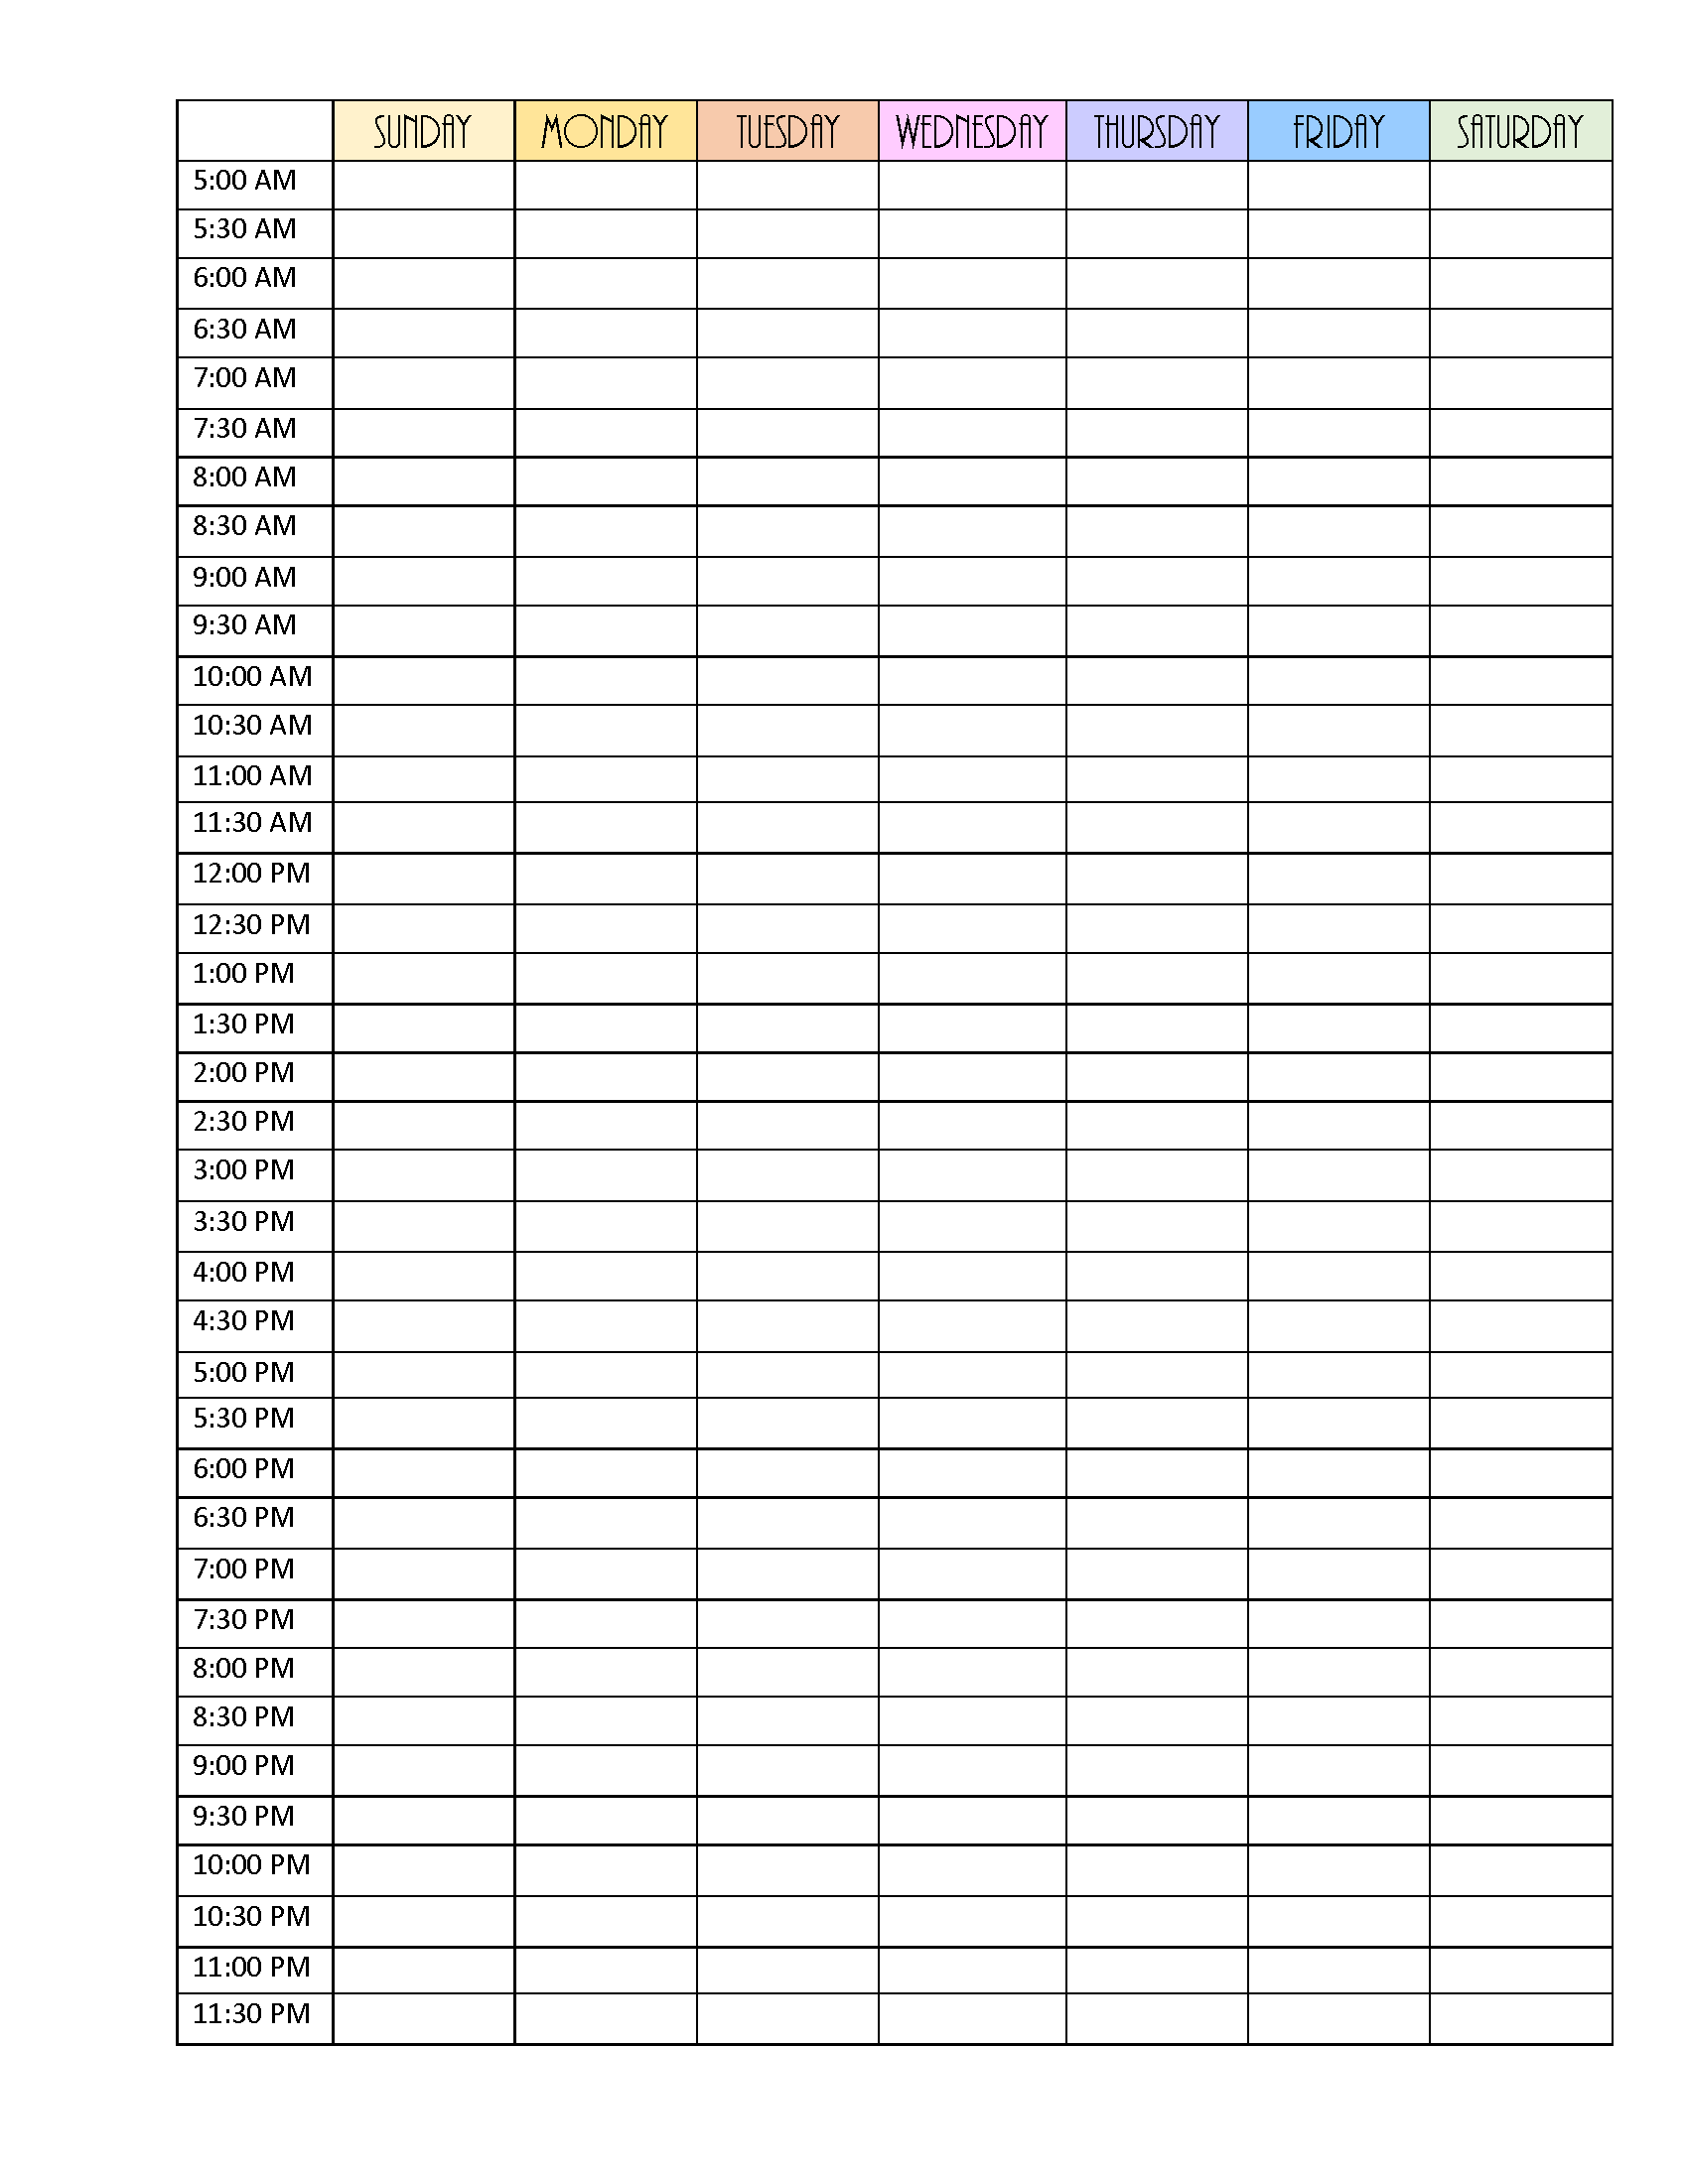 blank 2 week schedule template 12